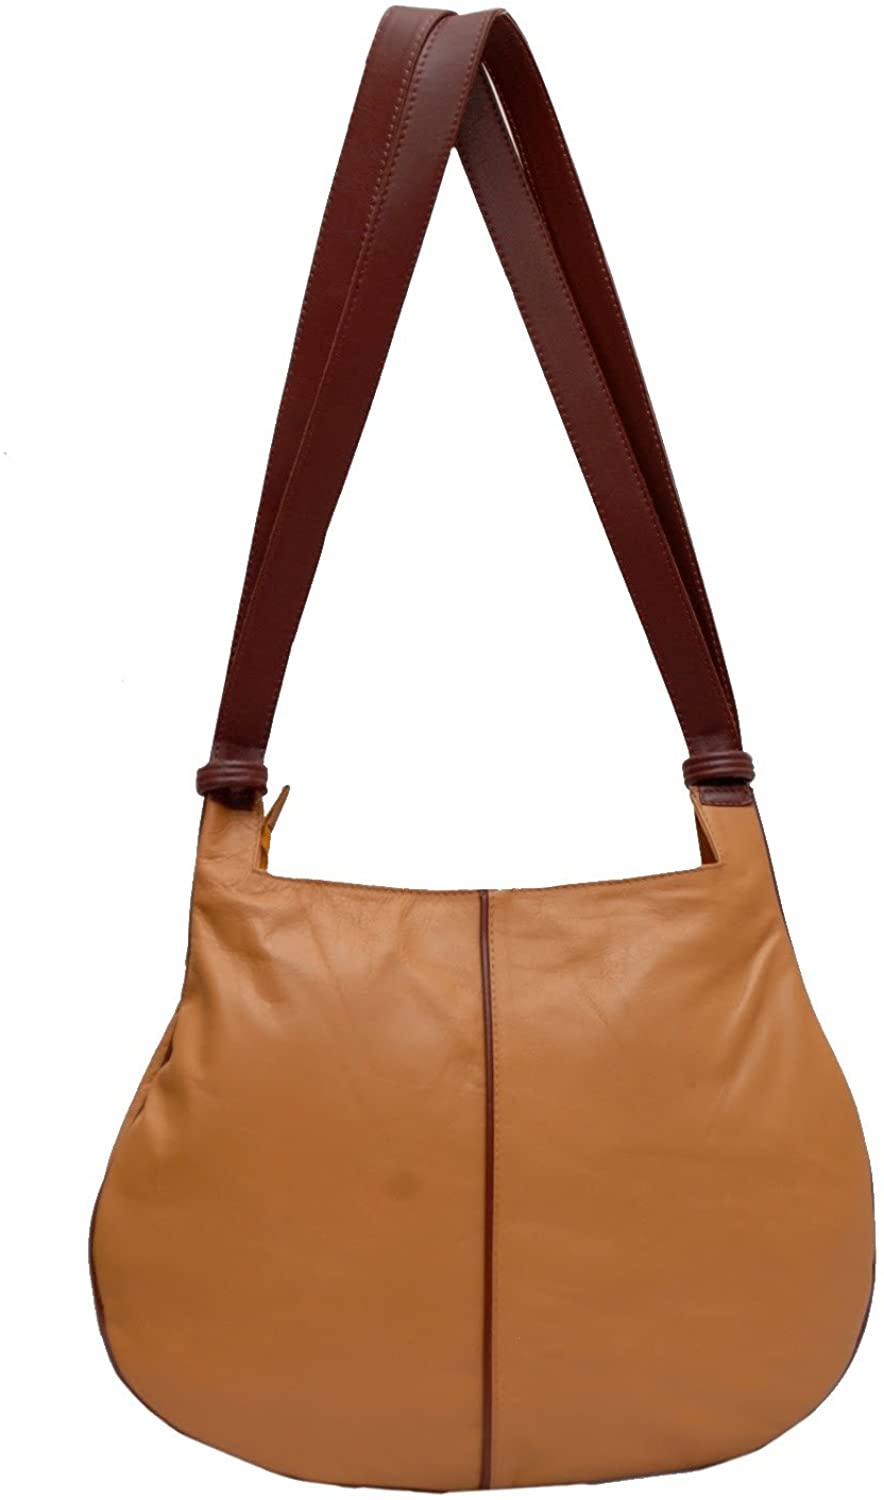 Price:$34.99    Kozmic 2-tone Leather Shoulder Bag  Clothing